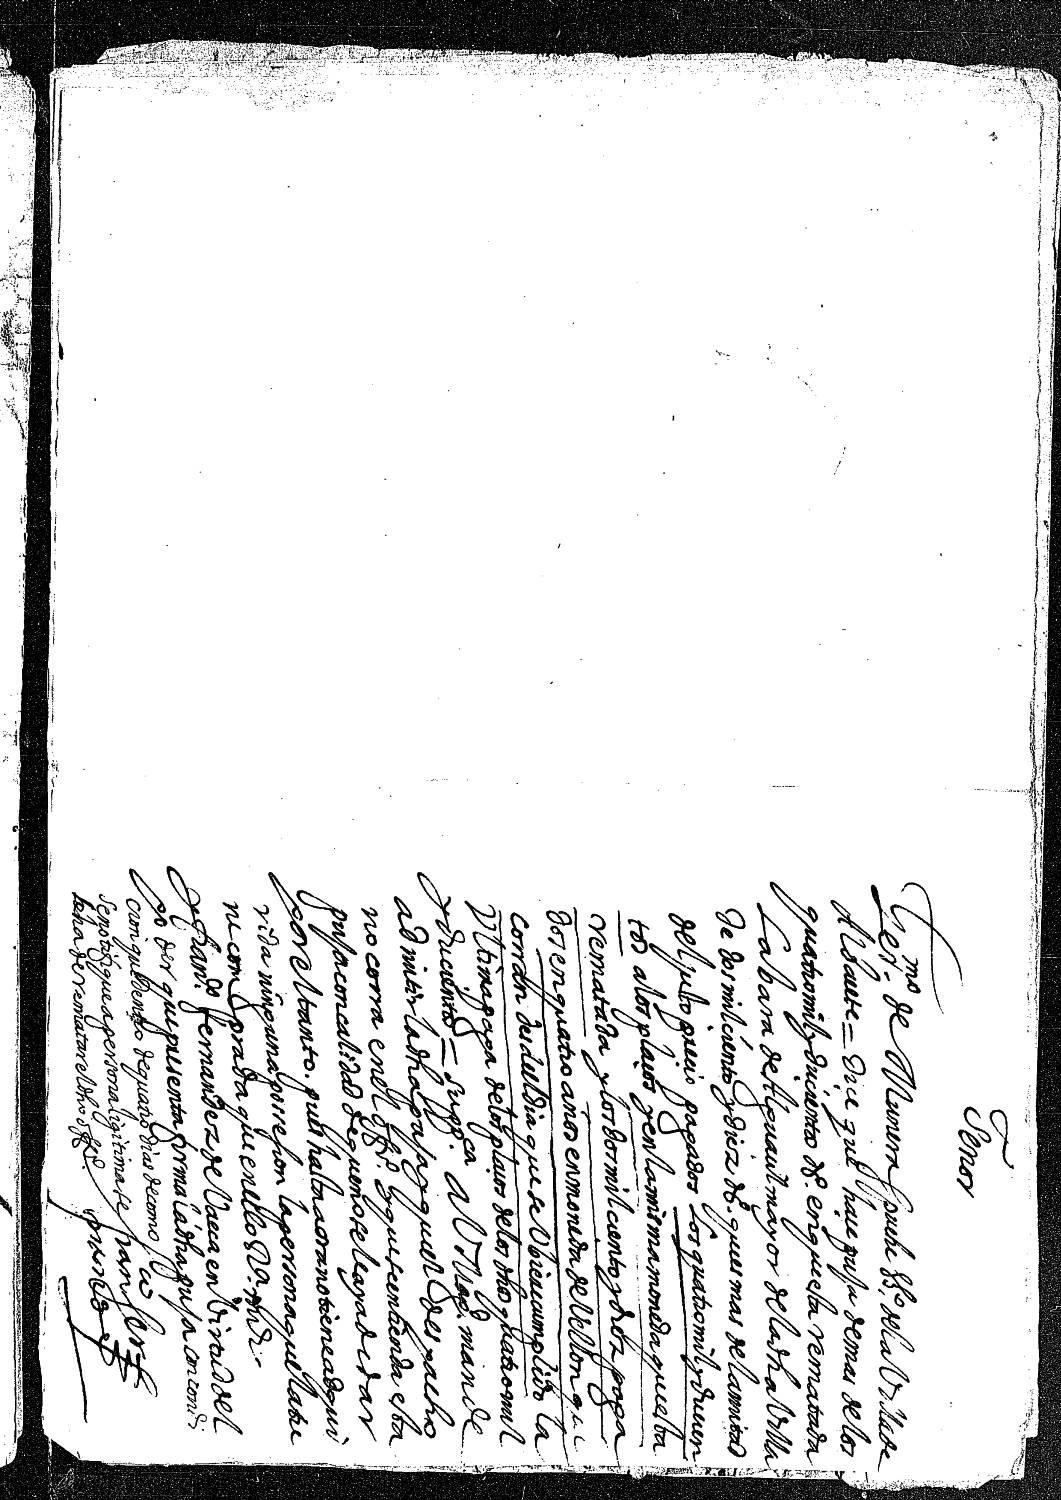 Petición de Jerónimo Munera Espuche, vecino de Albacete, solicitando al rey admita su puja por la vara de alguacil mayor de Albacete, pues la persona que la tiene comprada no tiene adquirida ninguna posesión sobre ella.